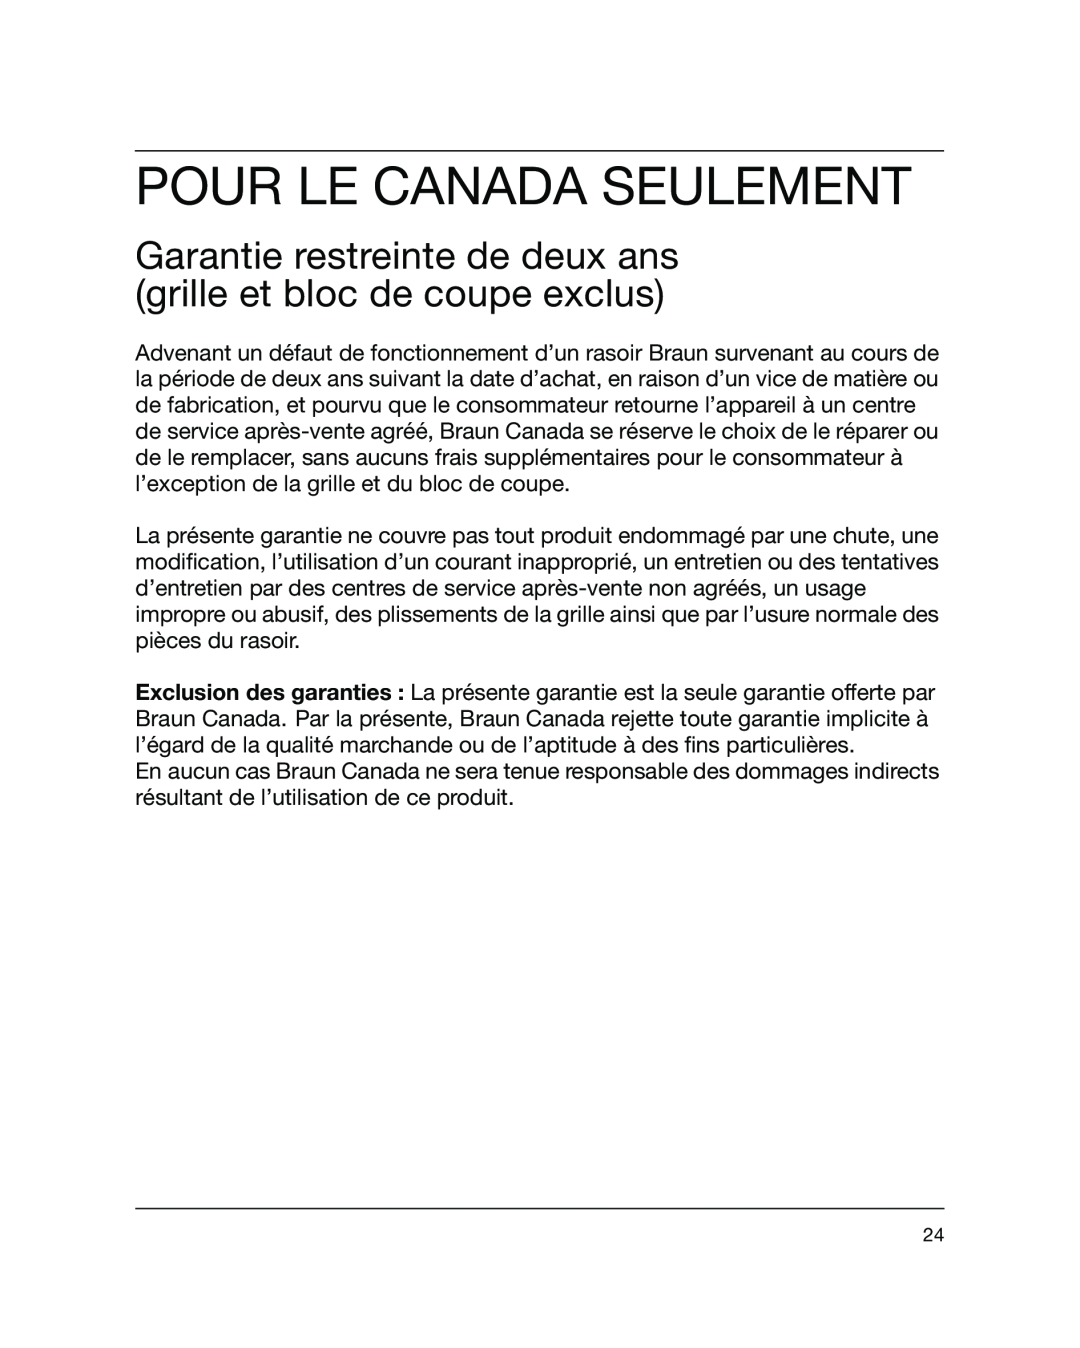 Braun 5441 manual Pour Le Canada Seulement, Garantie restreinte de deux ans grille et bloc de coupe exclus 